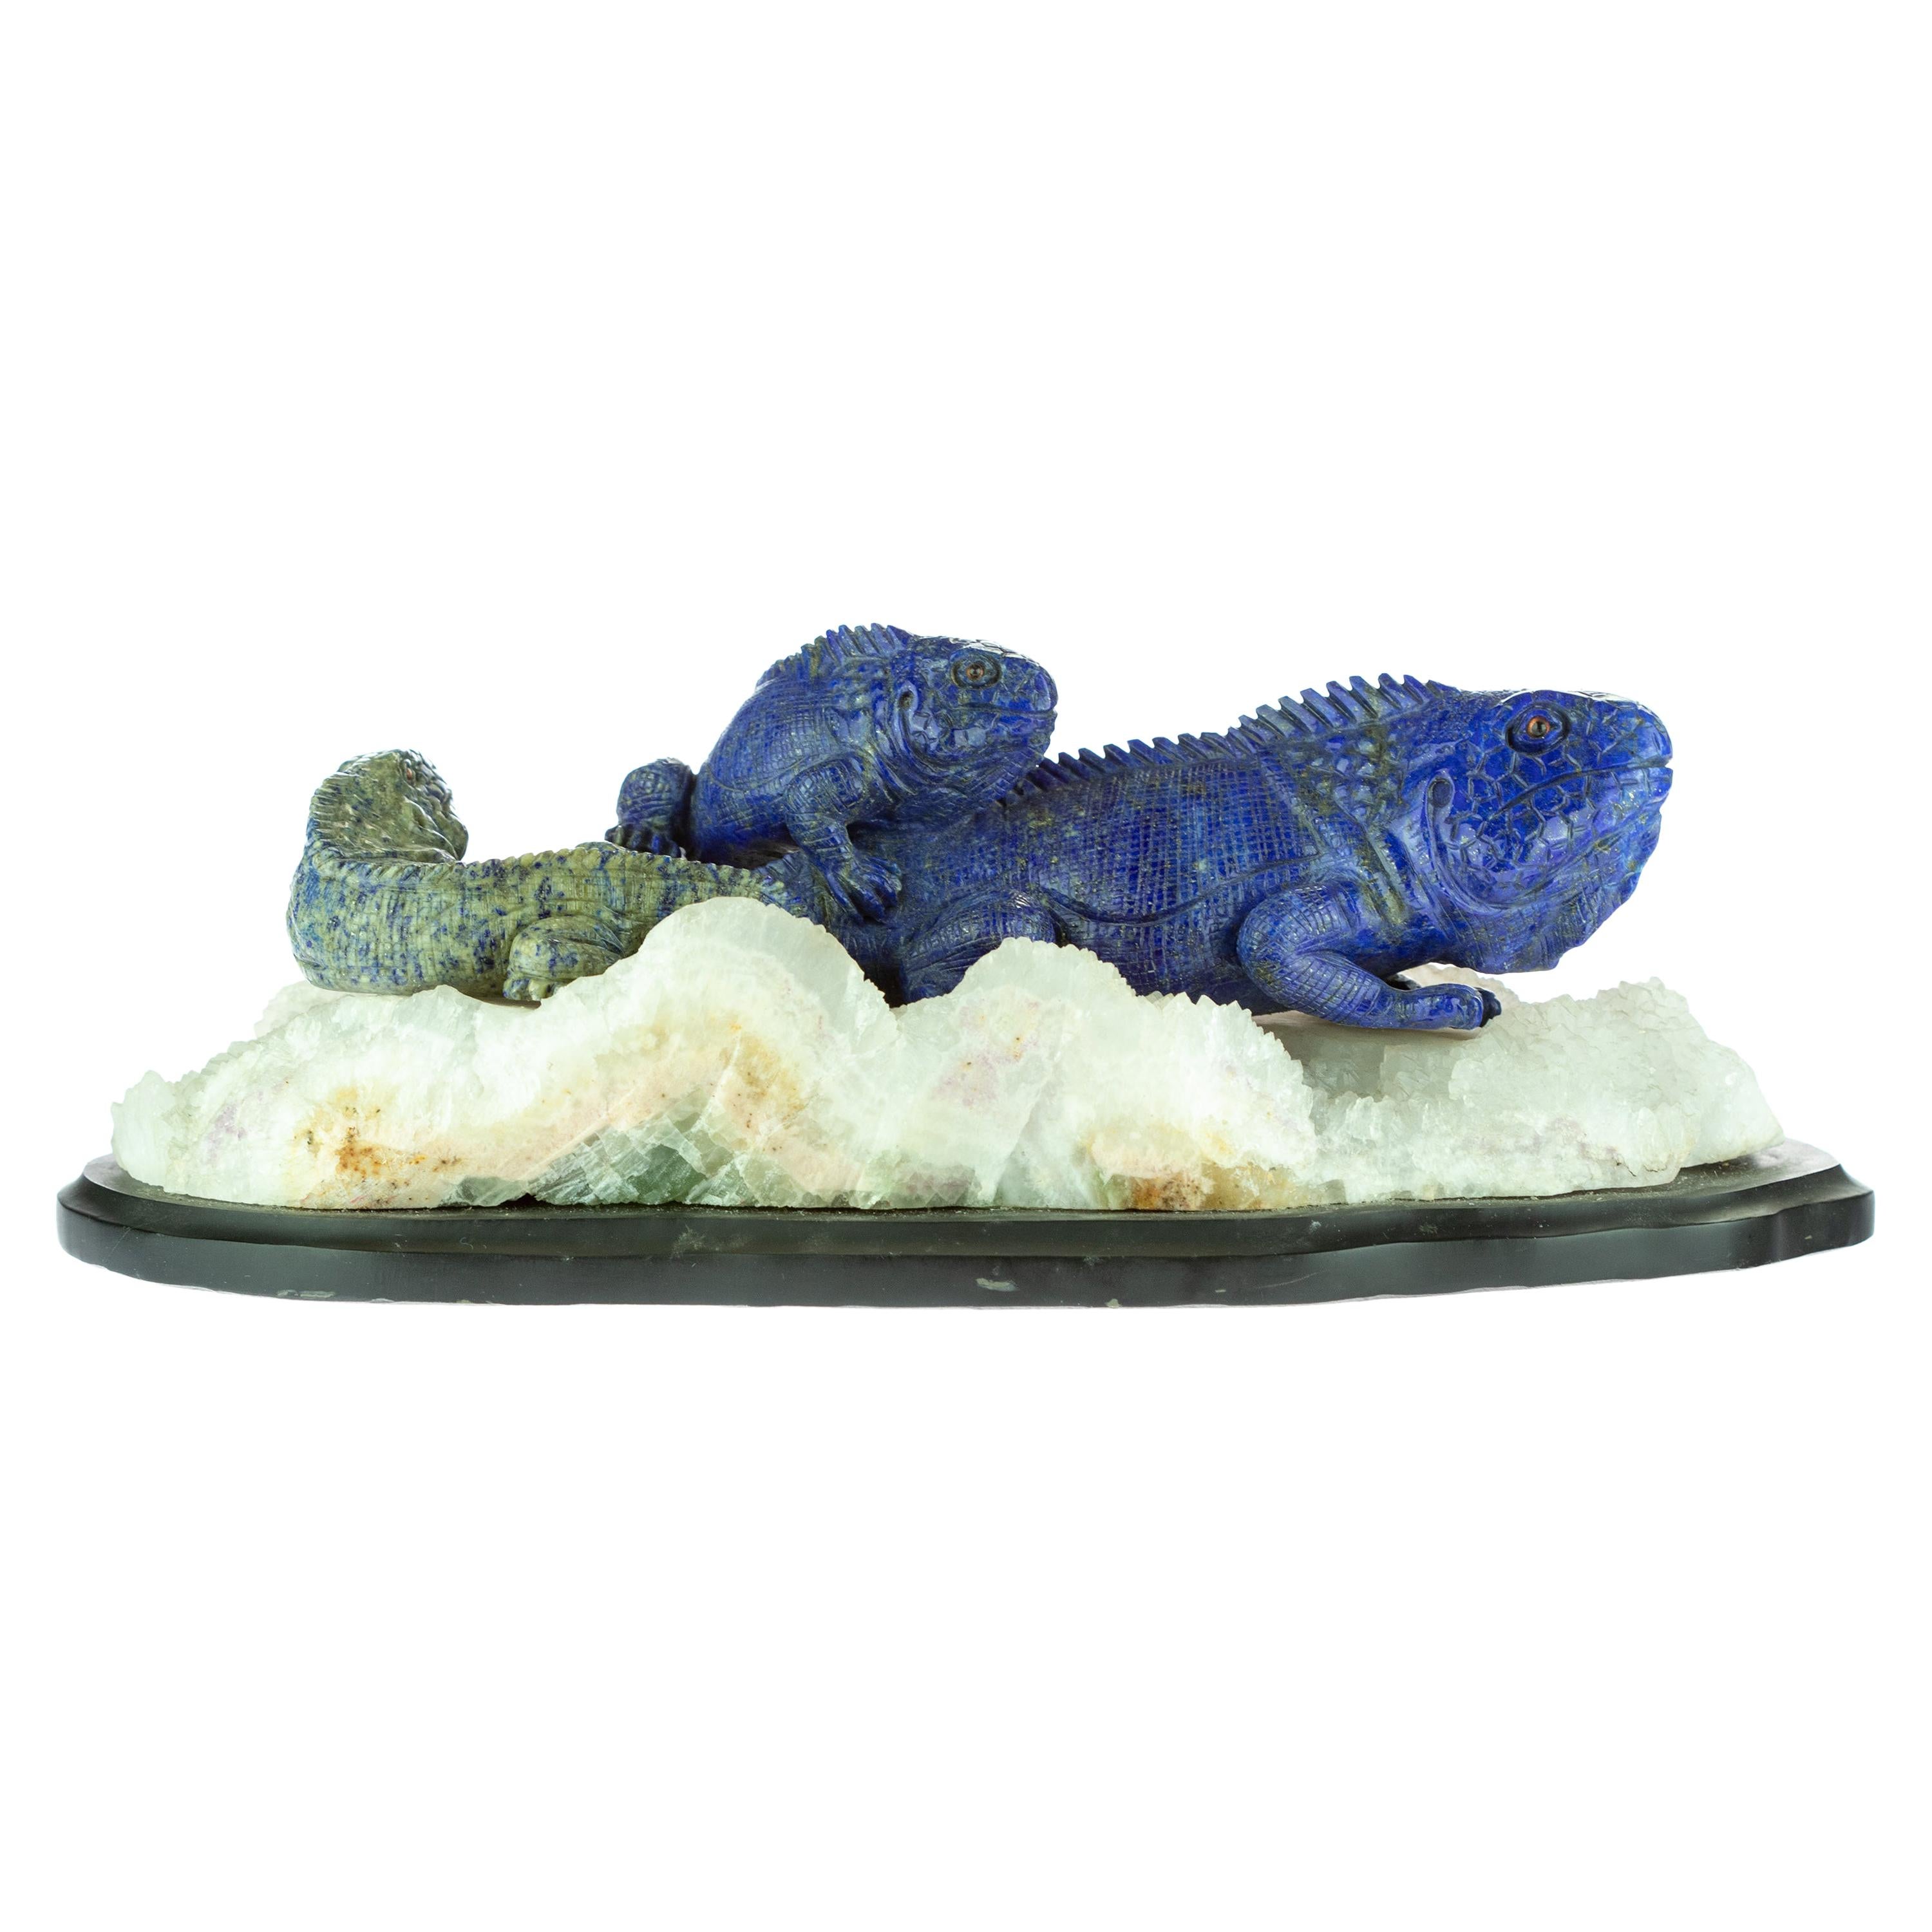 Lapis Lazuli Blue Lizards Figurine Carved Animal Artisanal Statue Sculpture For Sale